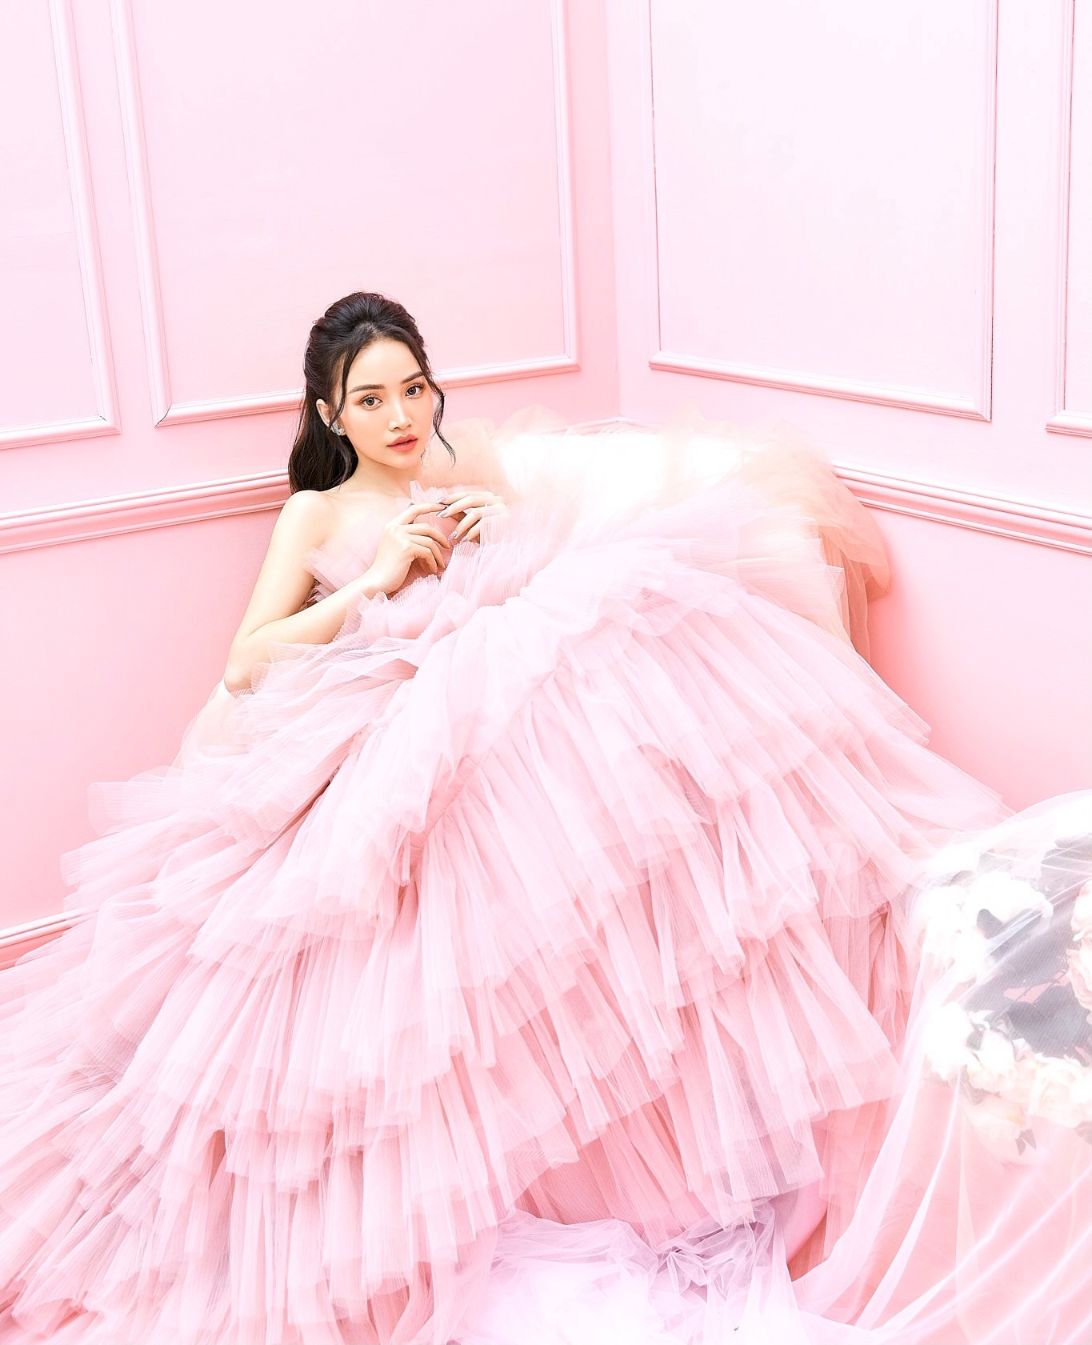 ha dan chi 4 Diễn viên, người mẫu Hà Đan Chi khiến fan bấn loạn bởi bộ hình mới đẹp như nàng thơ